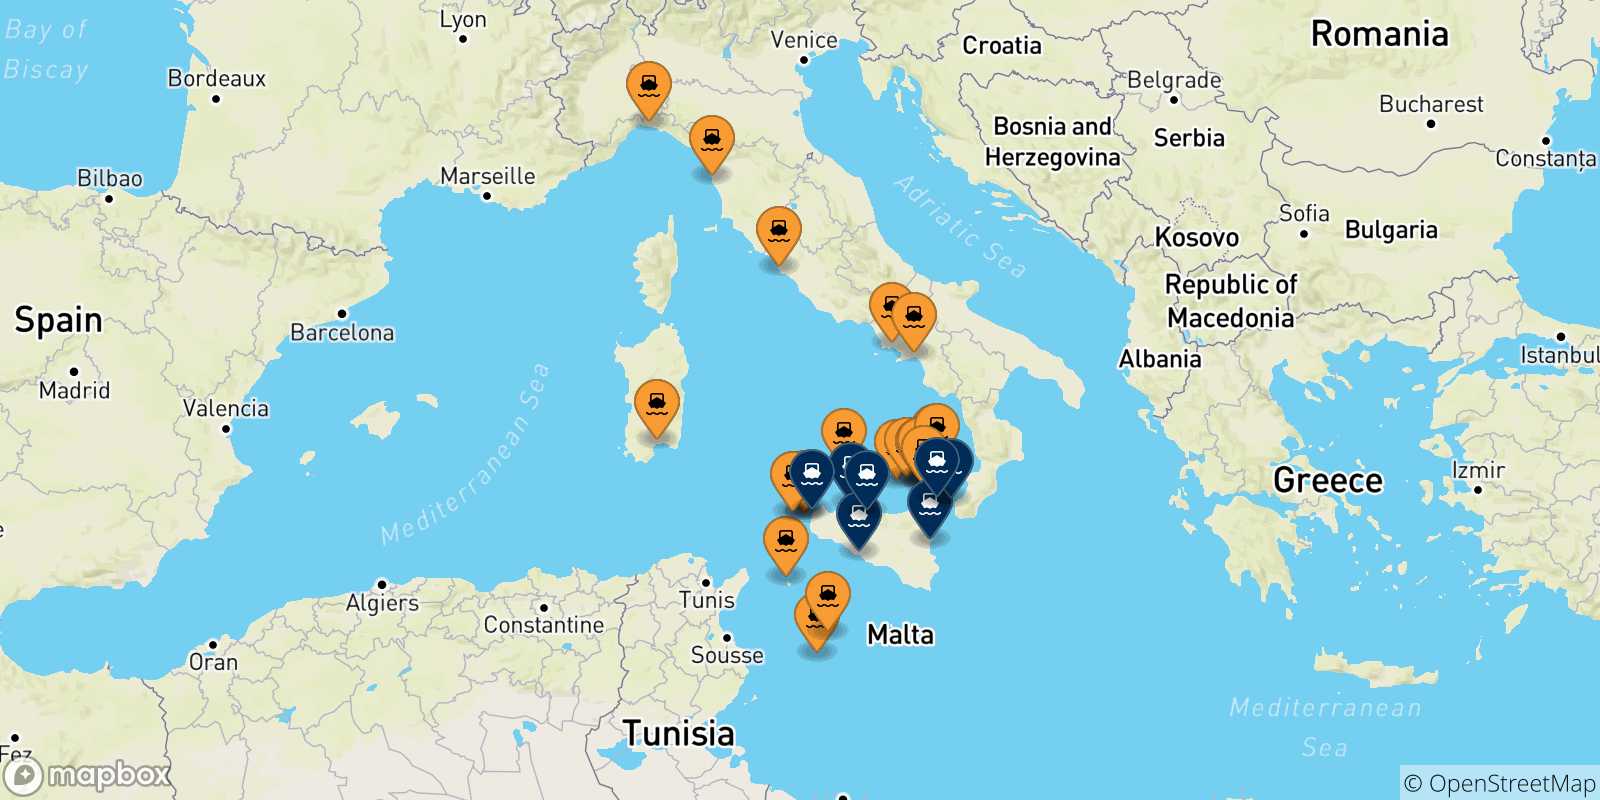 Mappa delle possibili rotte tra l'Italia e la Sicilia